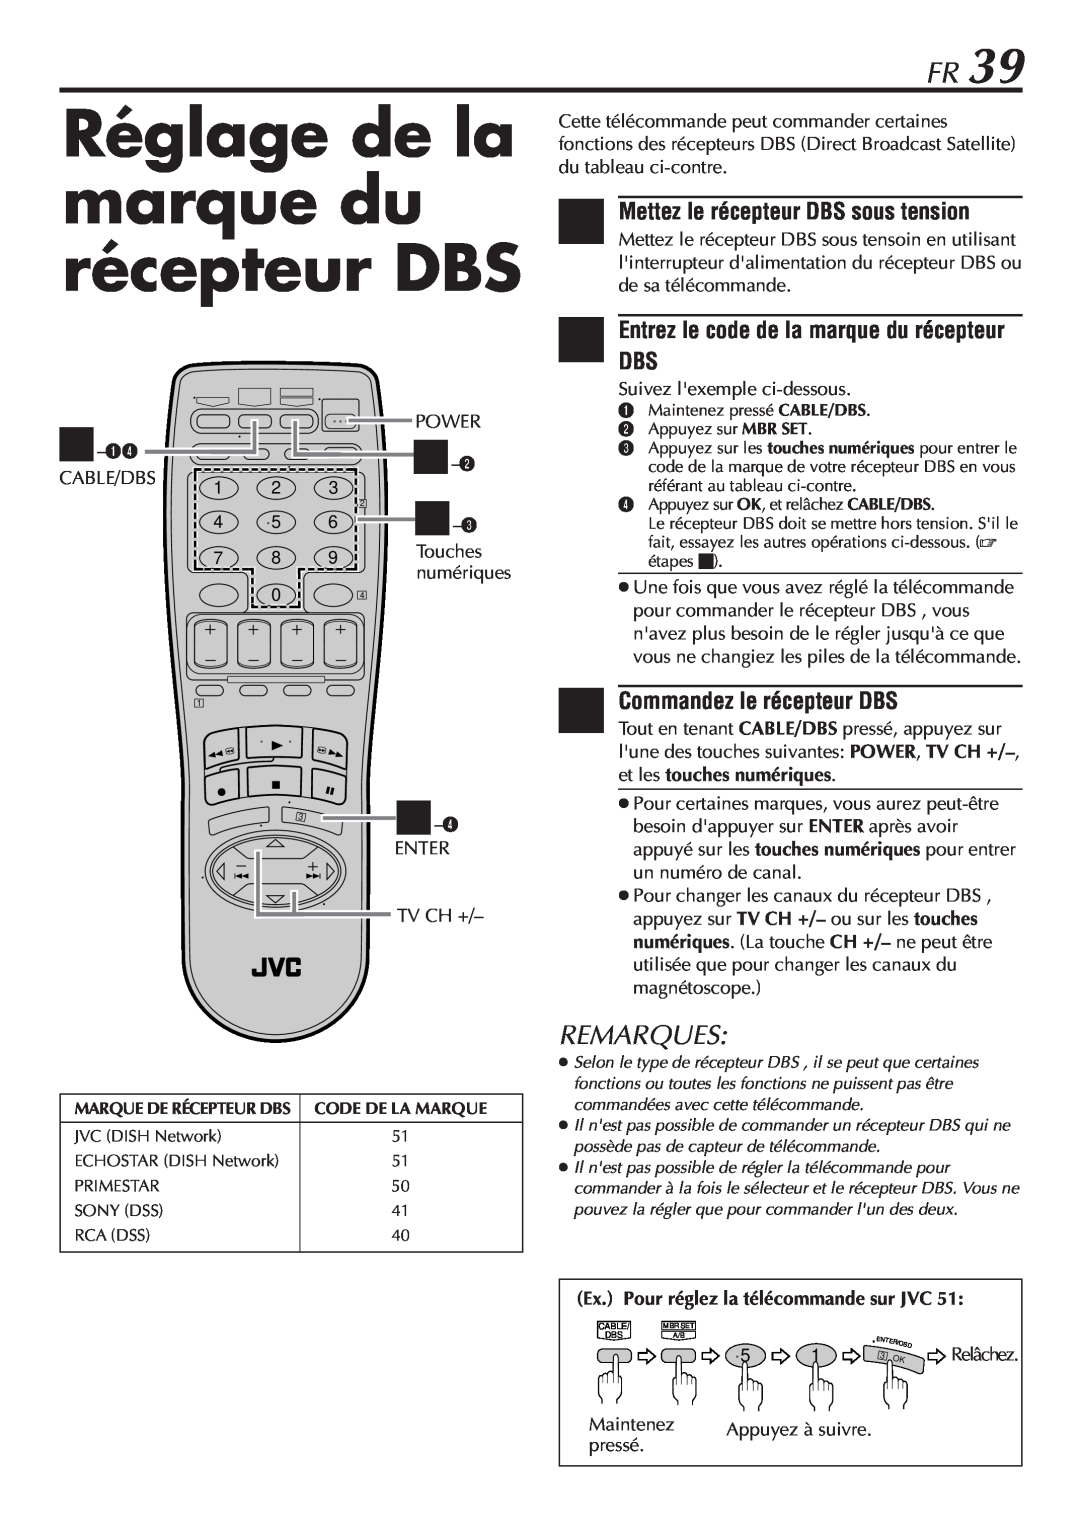 JVC HR-VP58U manual Réglage de la marque du récepteur DBS, Commandez le récepteur DBS, Remarques 